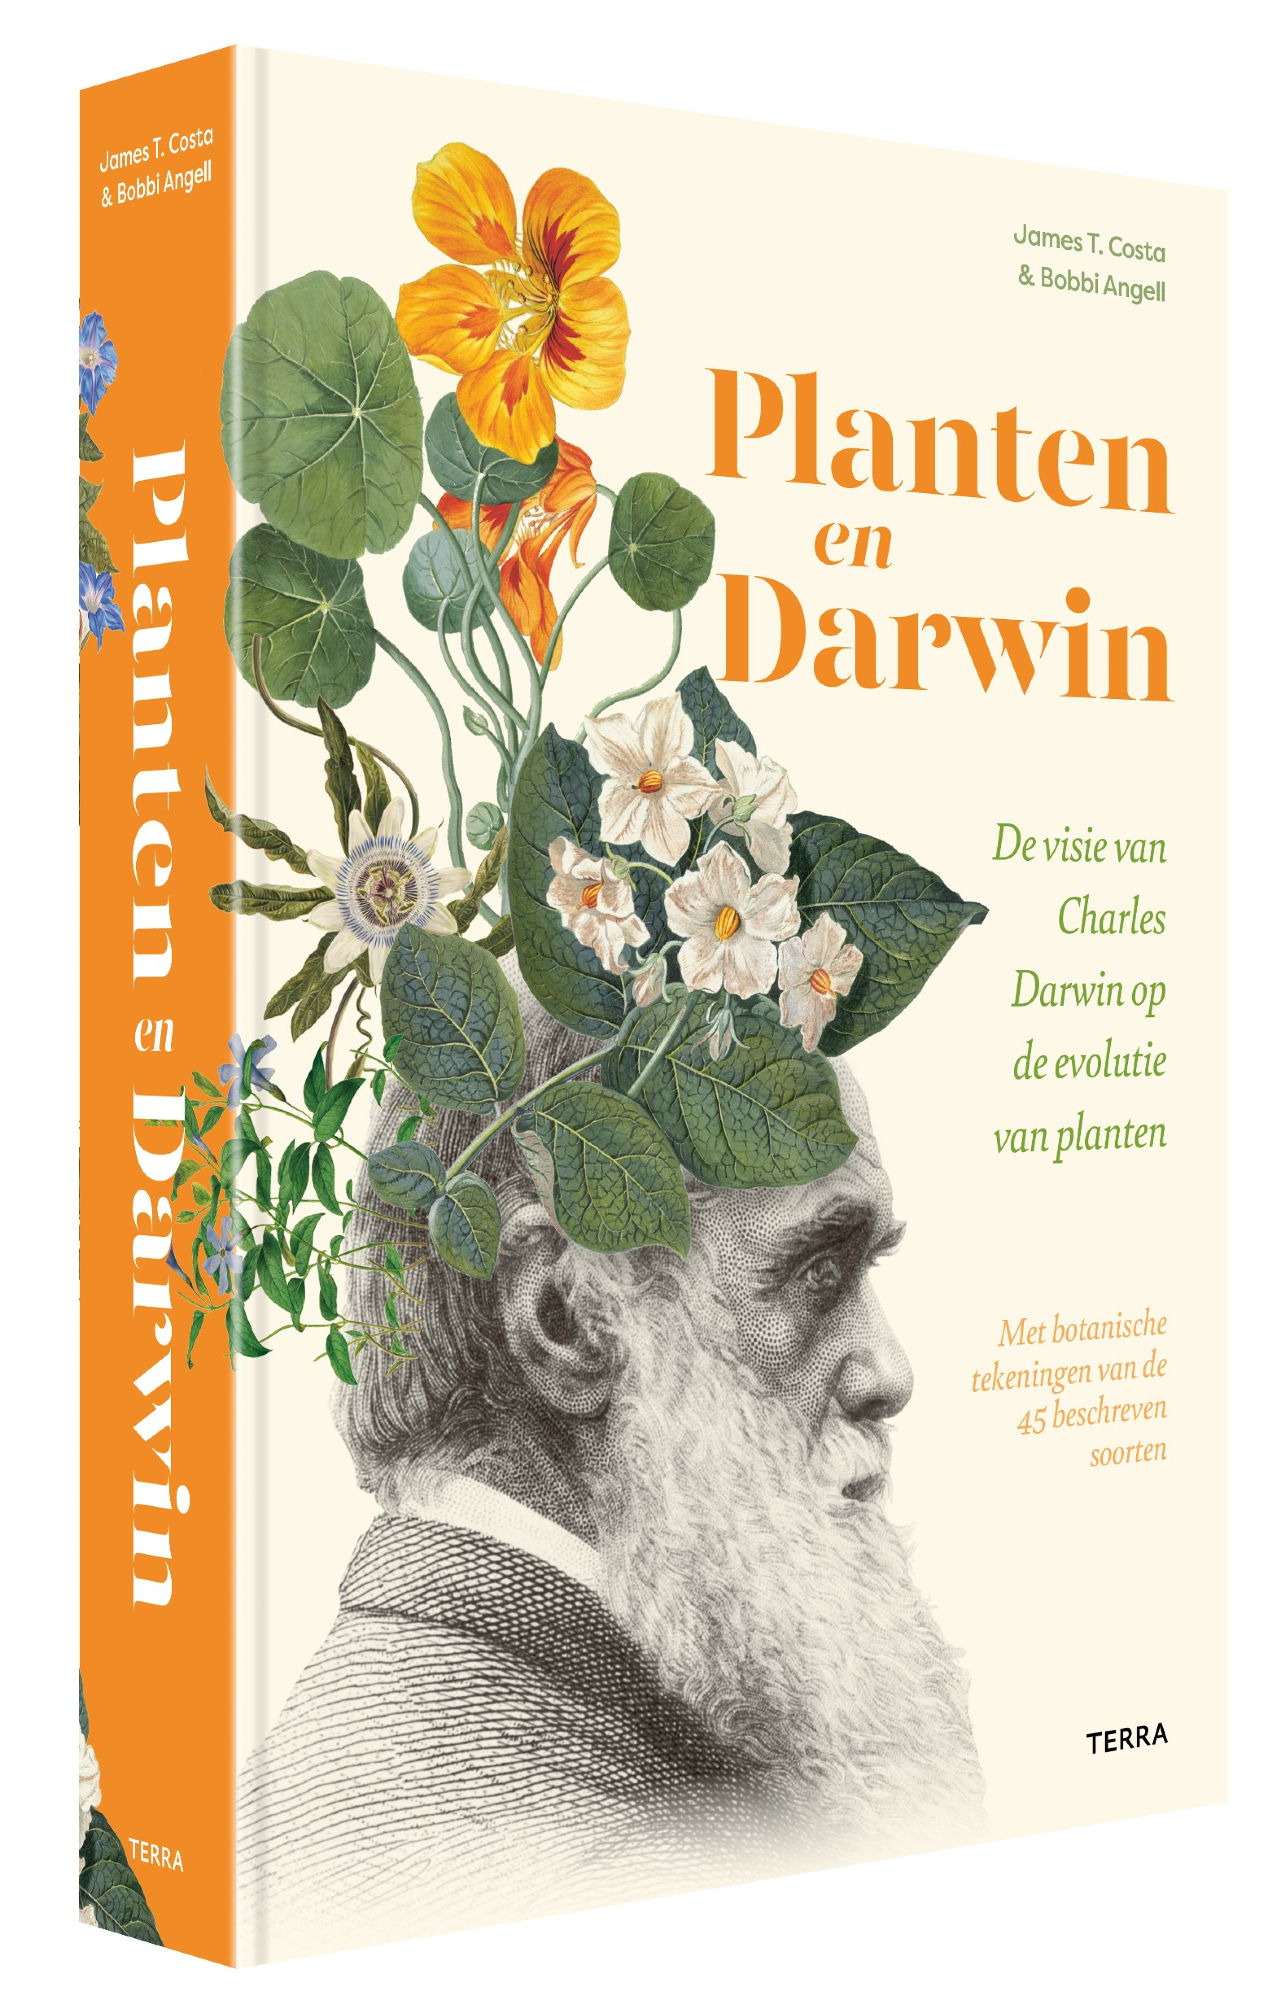 De visie van Charles Darwin op de evolutie van planten